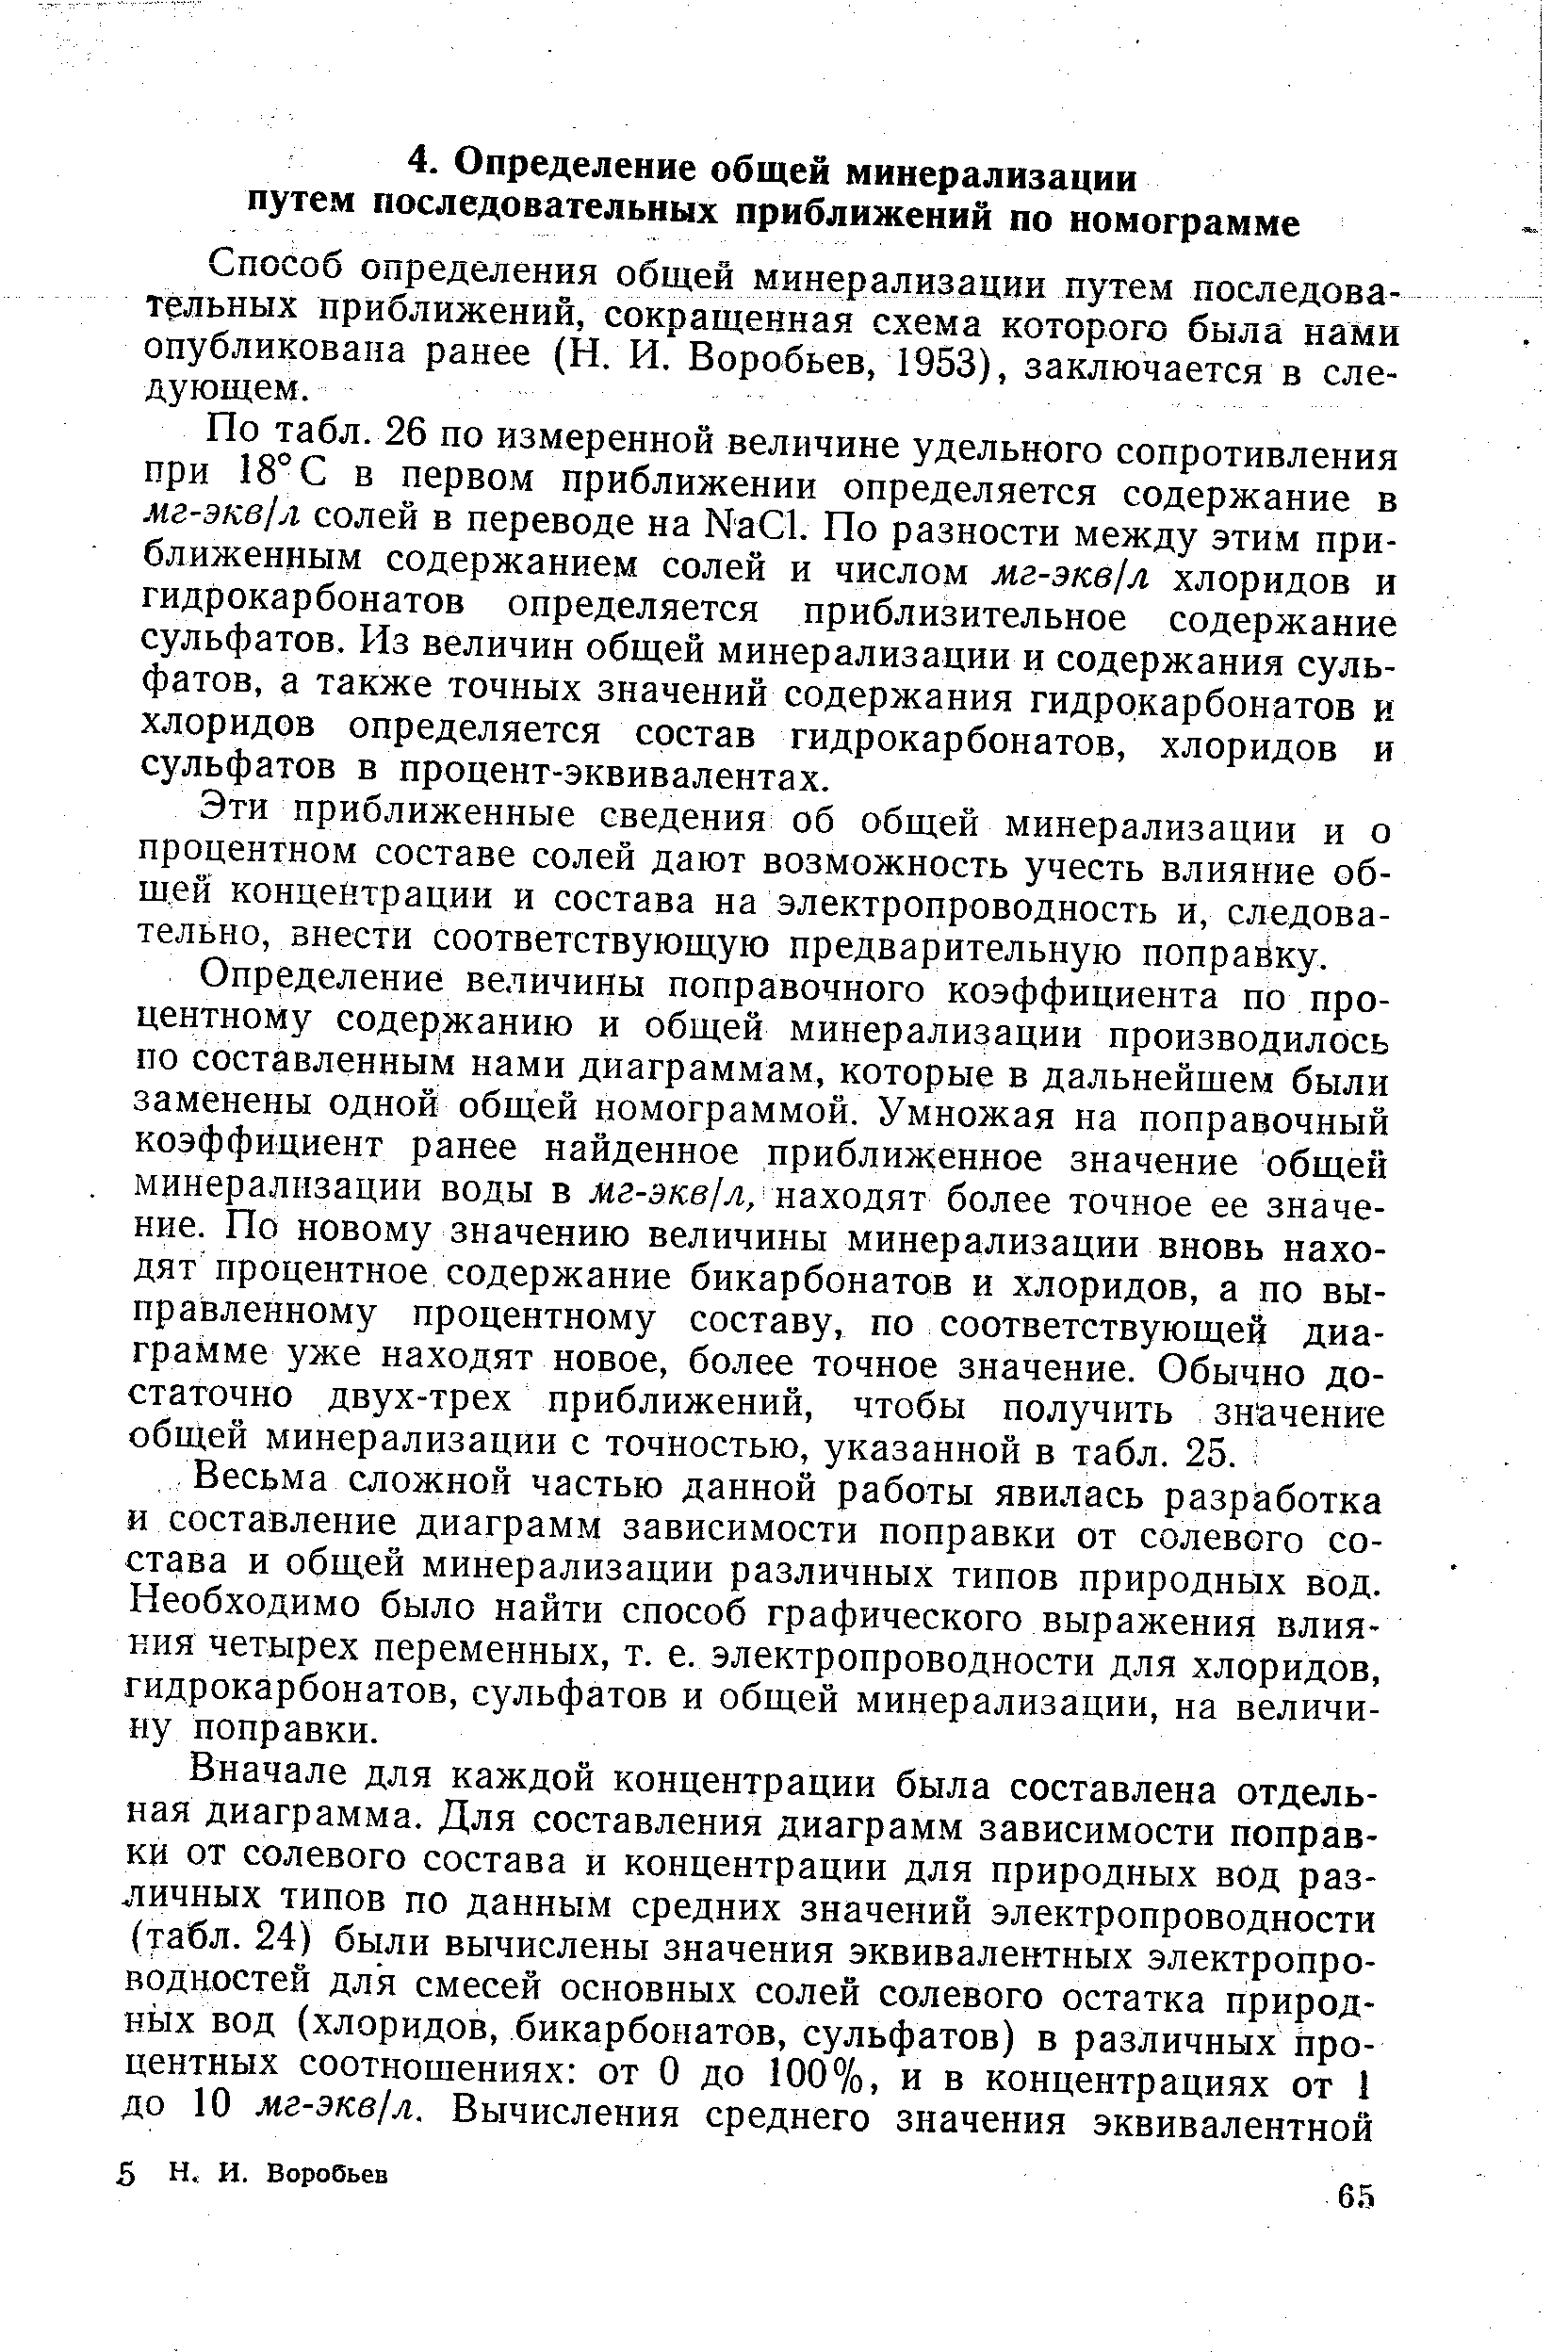 Способ определения общей минерализации путем последовательных приближений, сокращенная схема которого была нами опубликована ранее (Н, И, Воробьев, 1953), заключается в следующем.